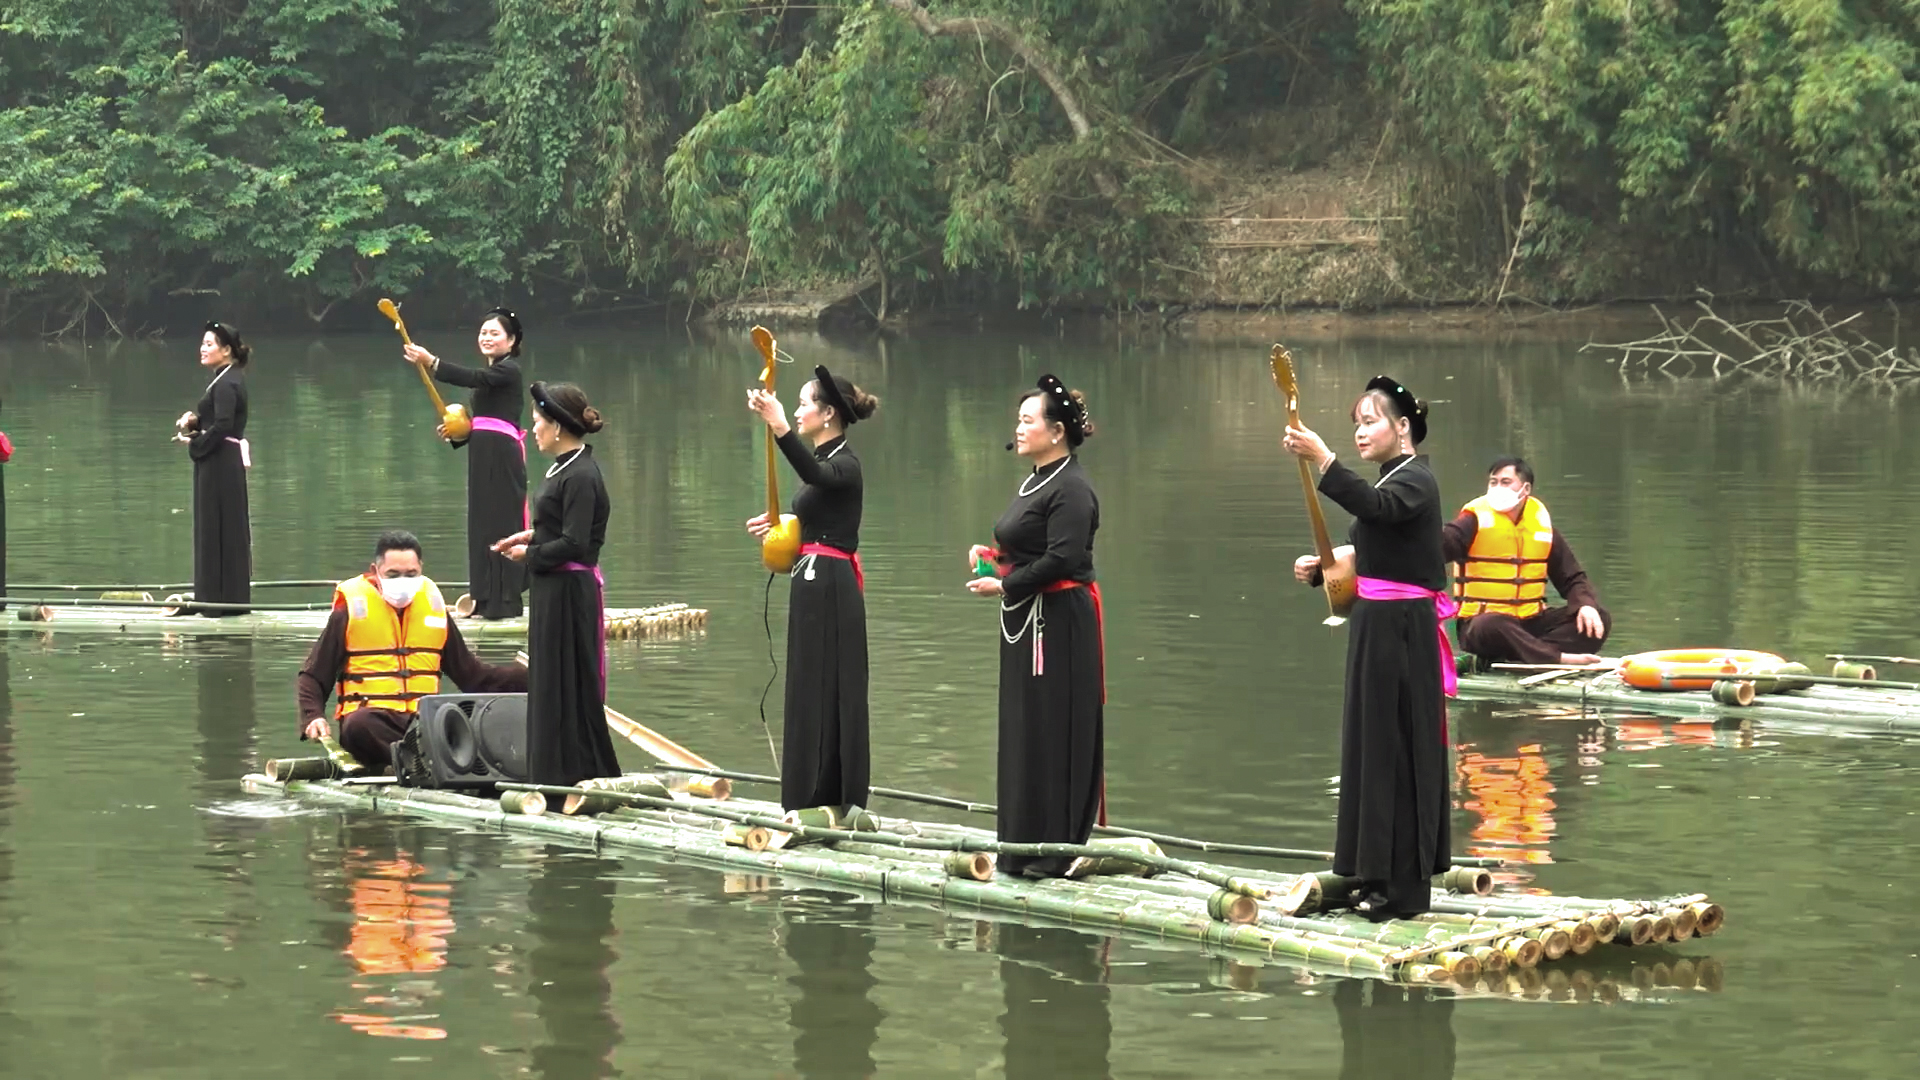 Dựa trên những giá trị văn hóa đặc sắc của các dân tộc, cảnh quan thiên nhiên thơ mộng, tỉnh Tuyên Quang đã xác định phát triển du lịch là ngành kinh tế quan trọng. (Nguồn ảnh:  baotuyenquang.com.vn)